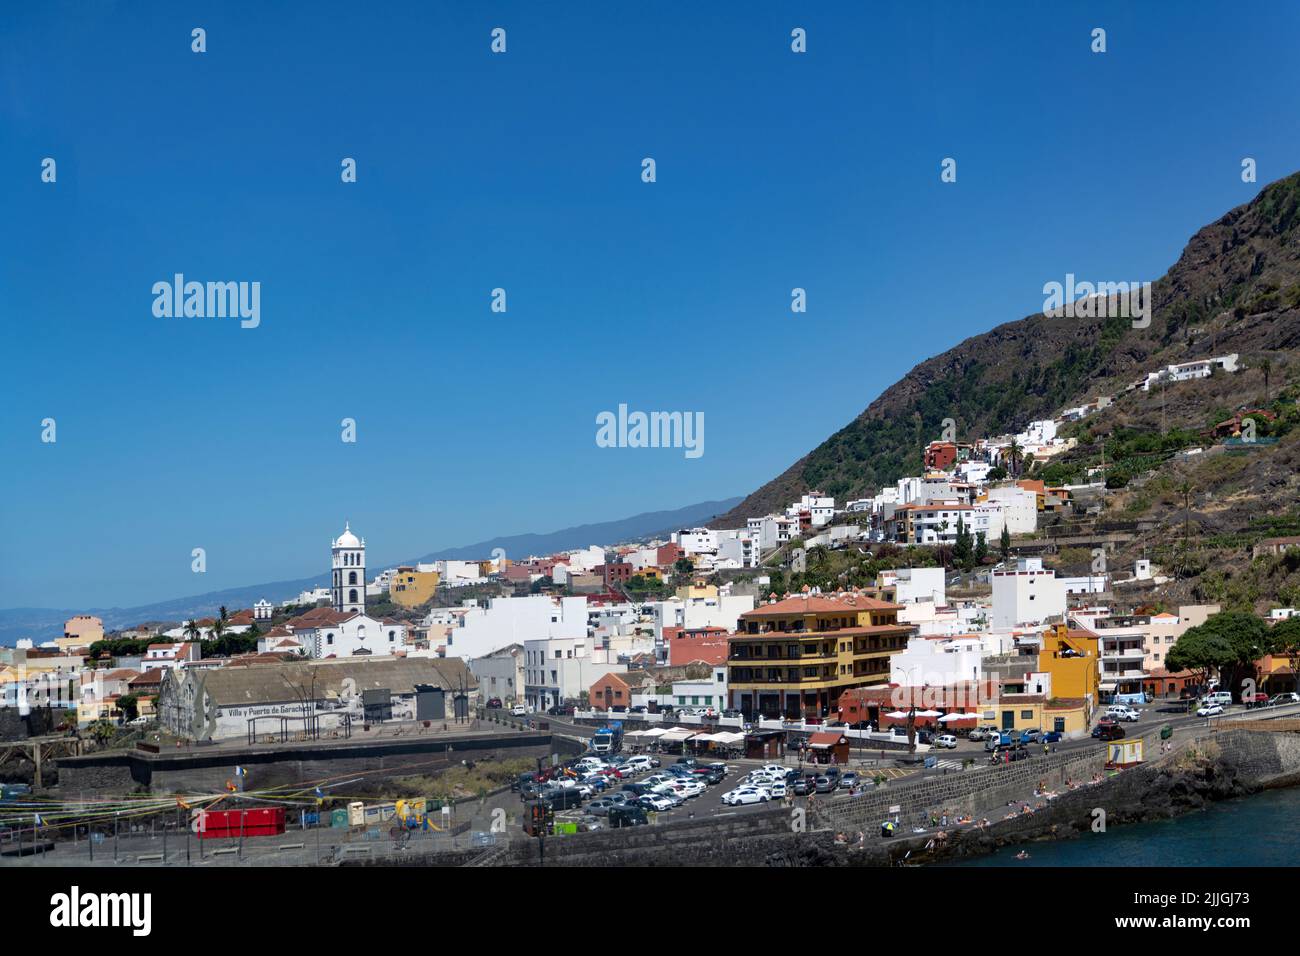 Villa y puerto de garachico hi-res stock photography and images - Alamy